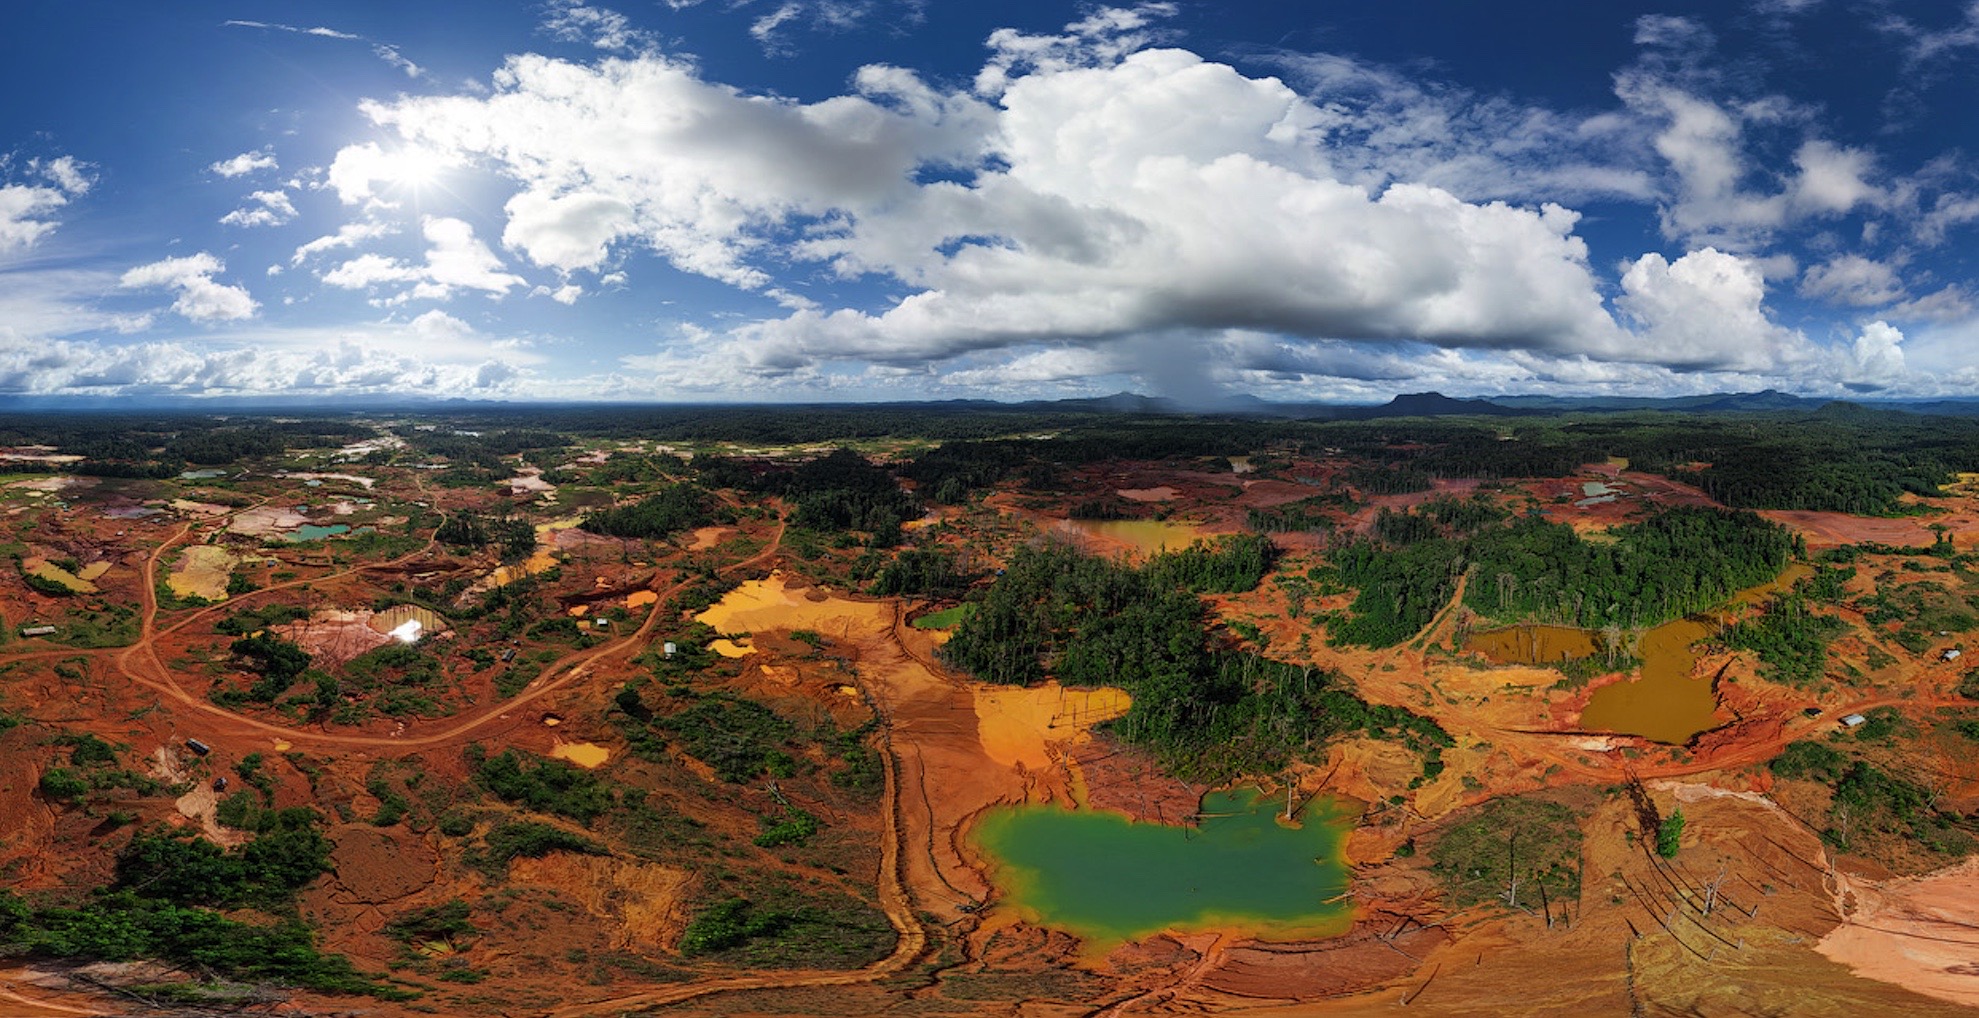 El terrible desastre ecológico de Nicolás Maduro para acelerar la producción ilegal de oro (FOTOS)